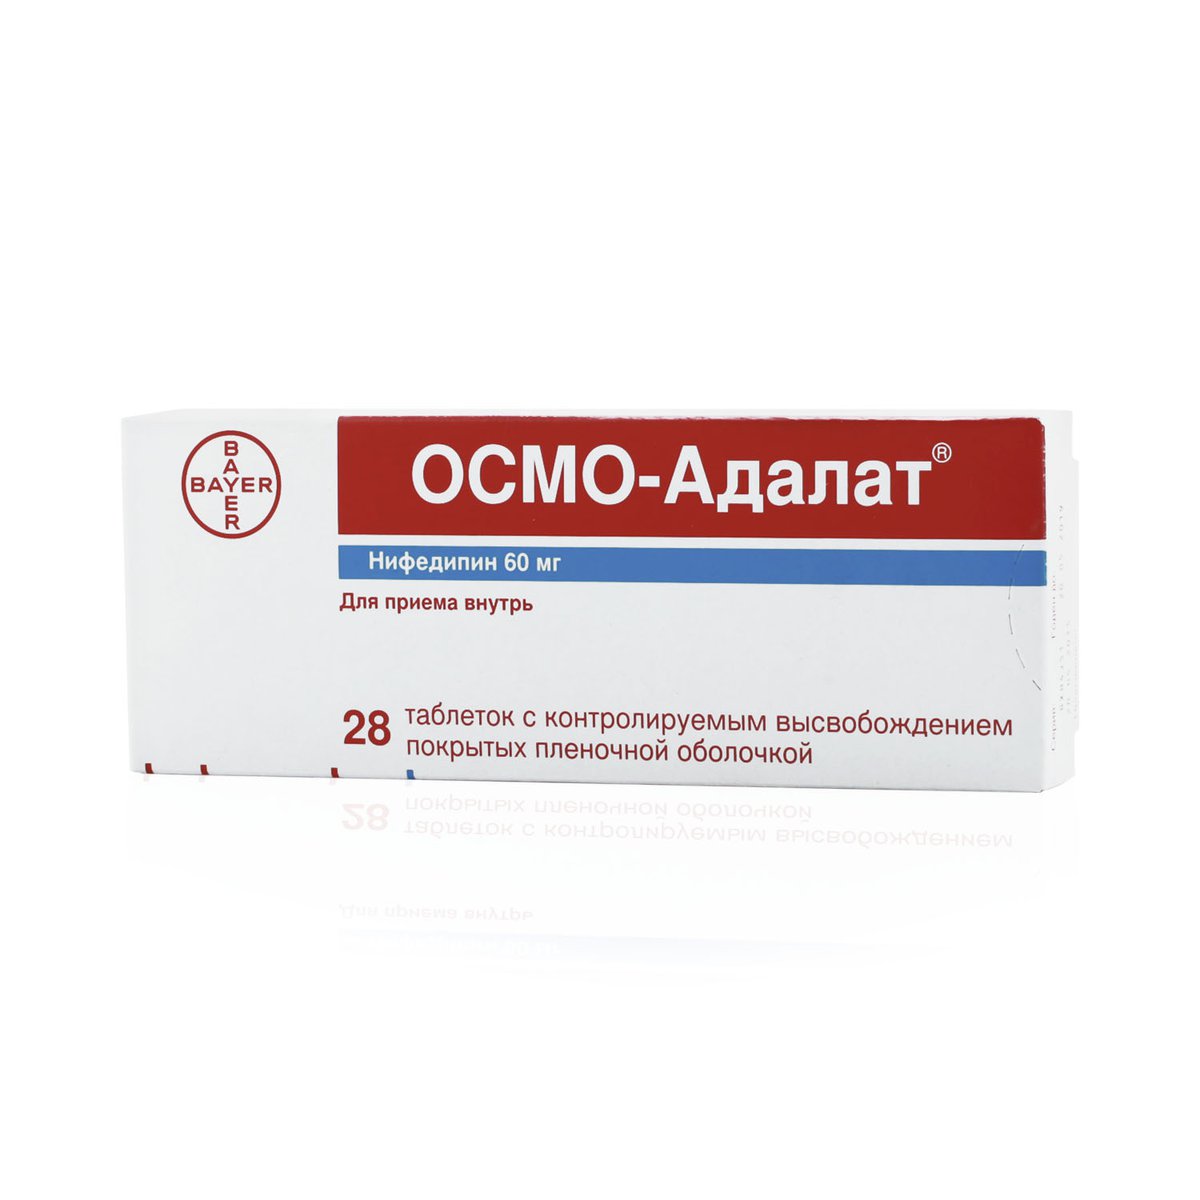 Осмо-адалат (таблетки, 28 шт, 60 мг) - цена,  онлайн  .